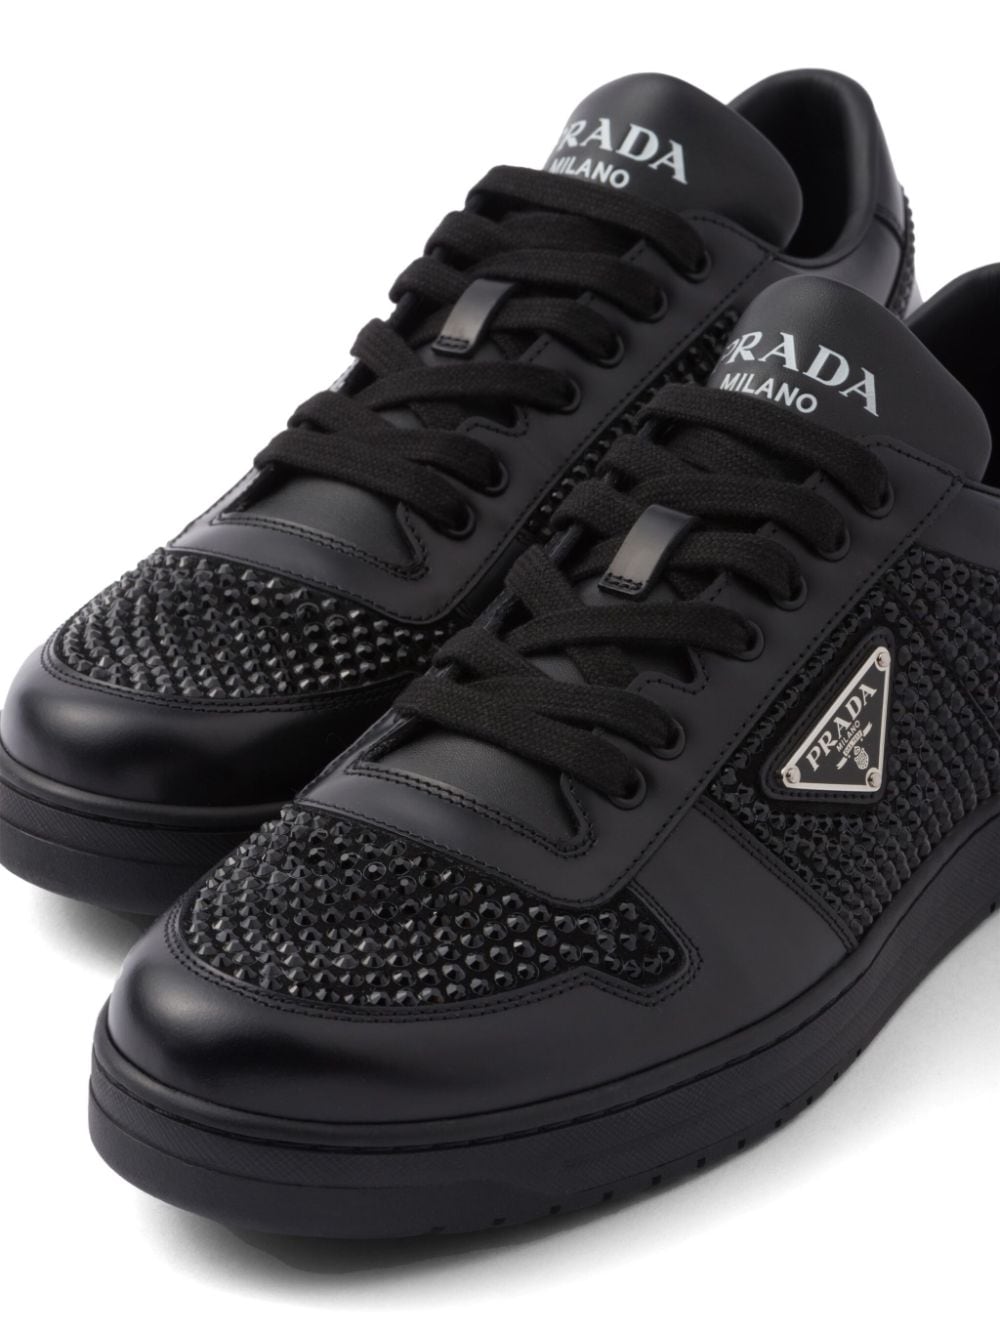 Prada crystal-embellished leather sneakers Black